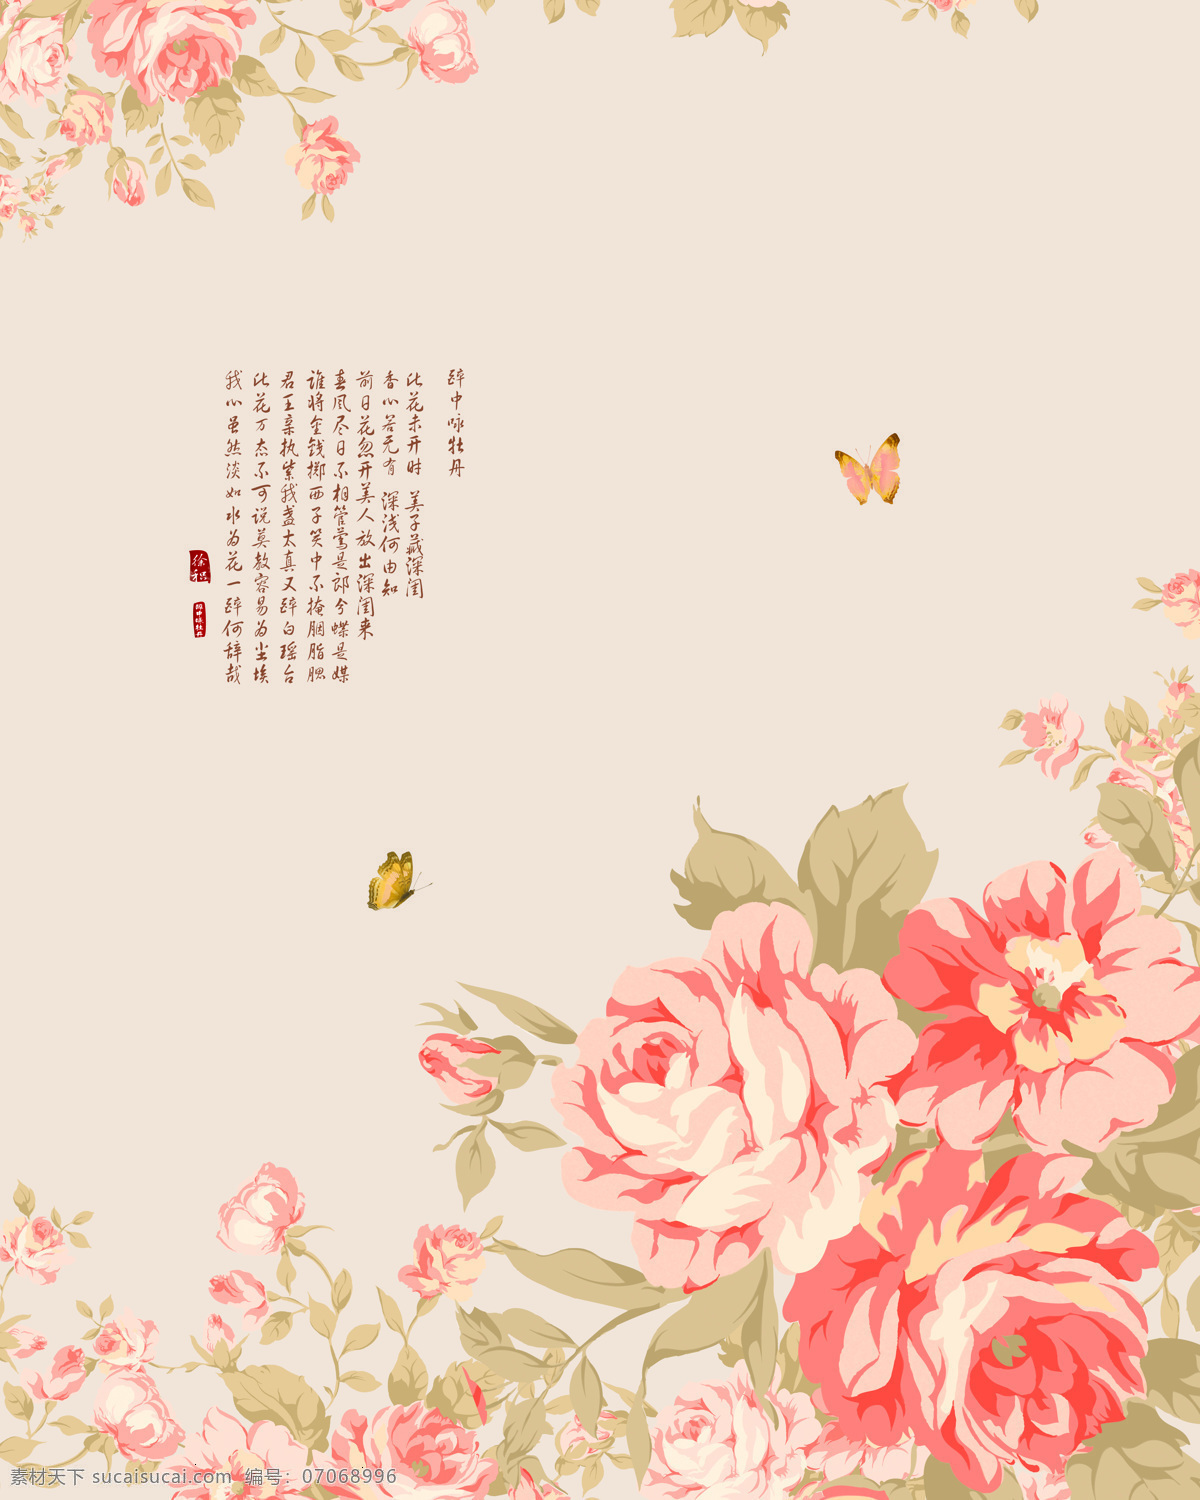 红 牡丹 图 国画 蝴蝶 花朵 花纹 黄色背景 手绘 移门图案 中国 装饰素材